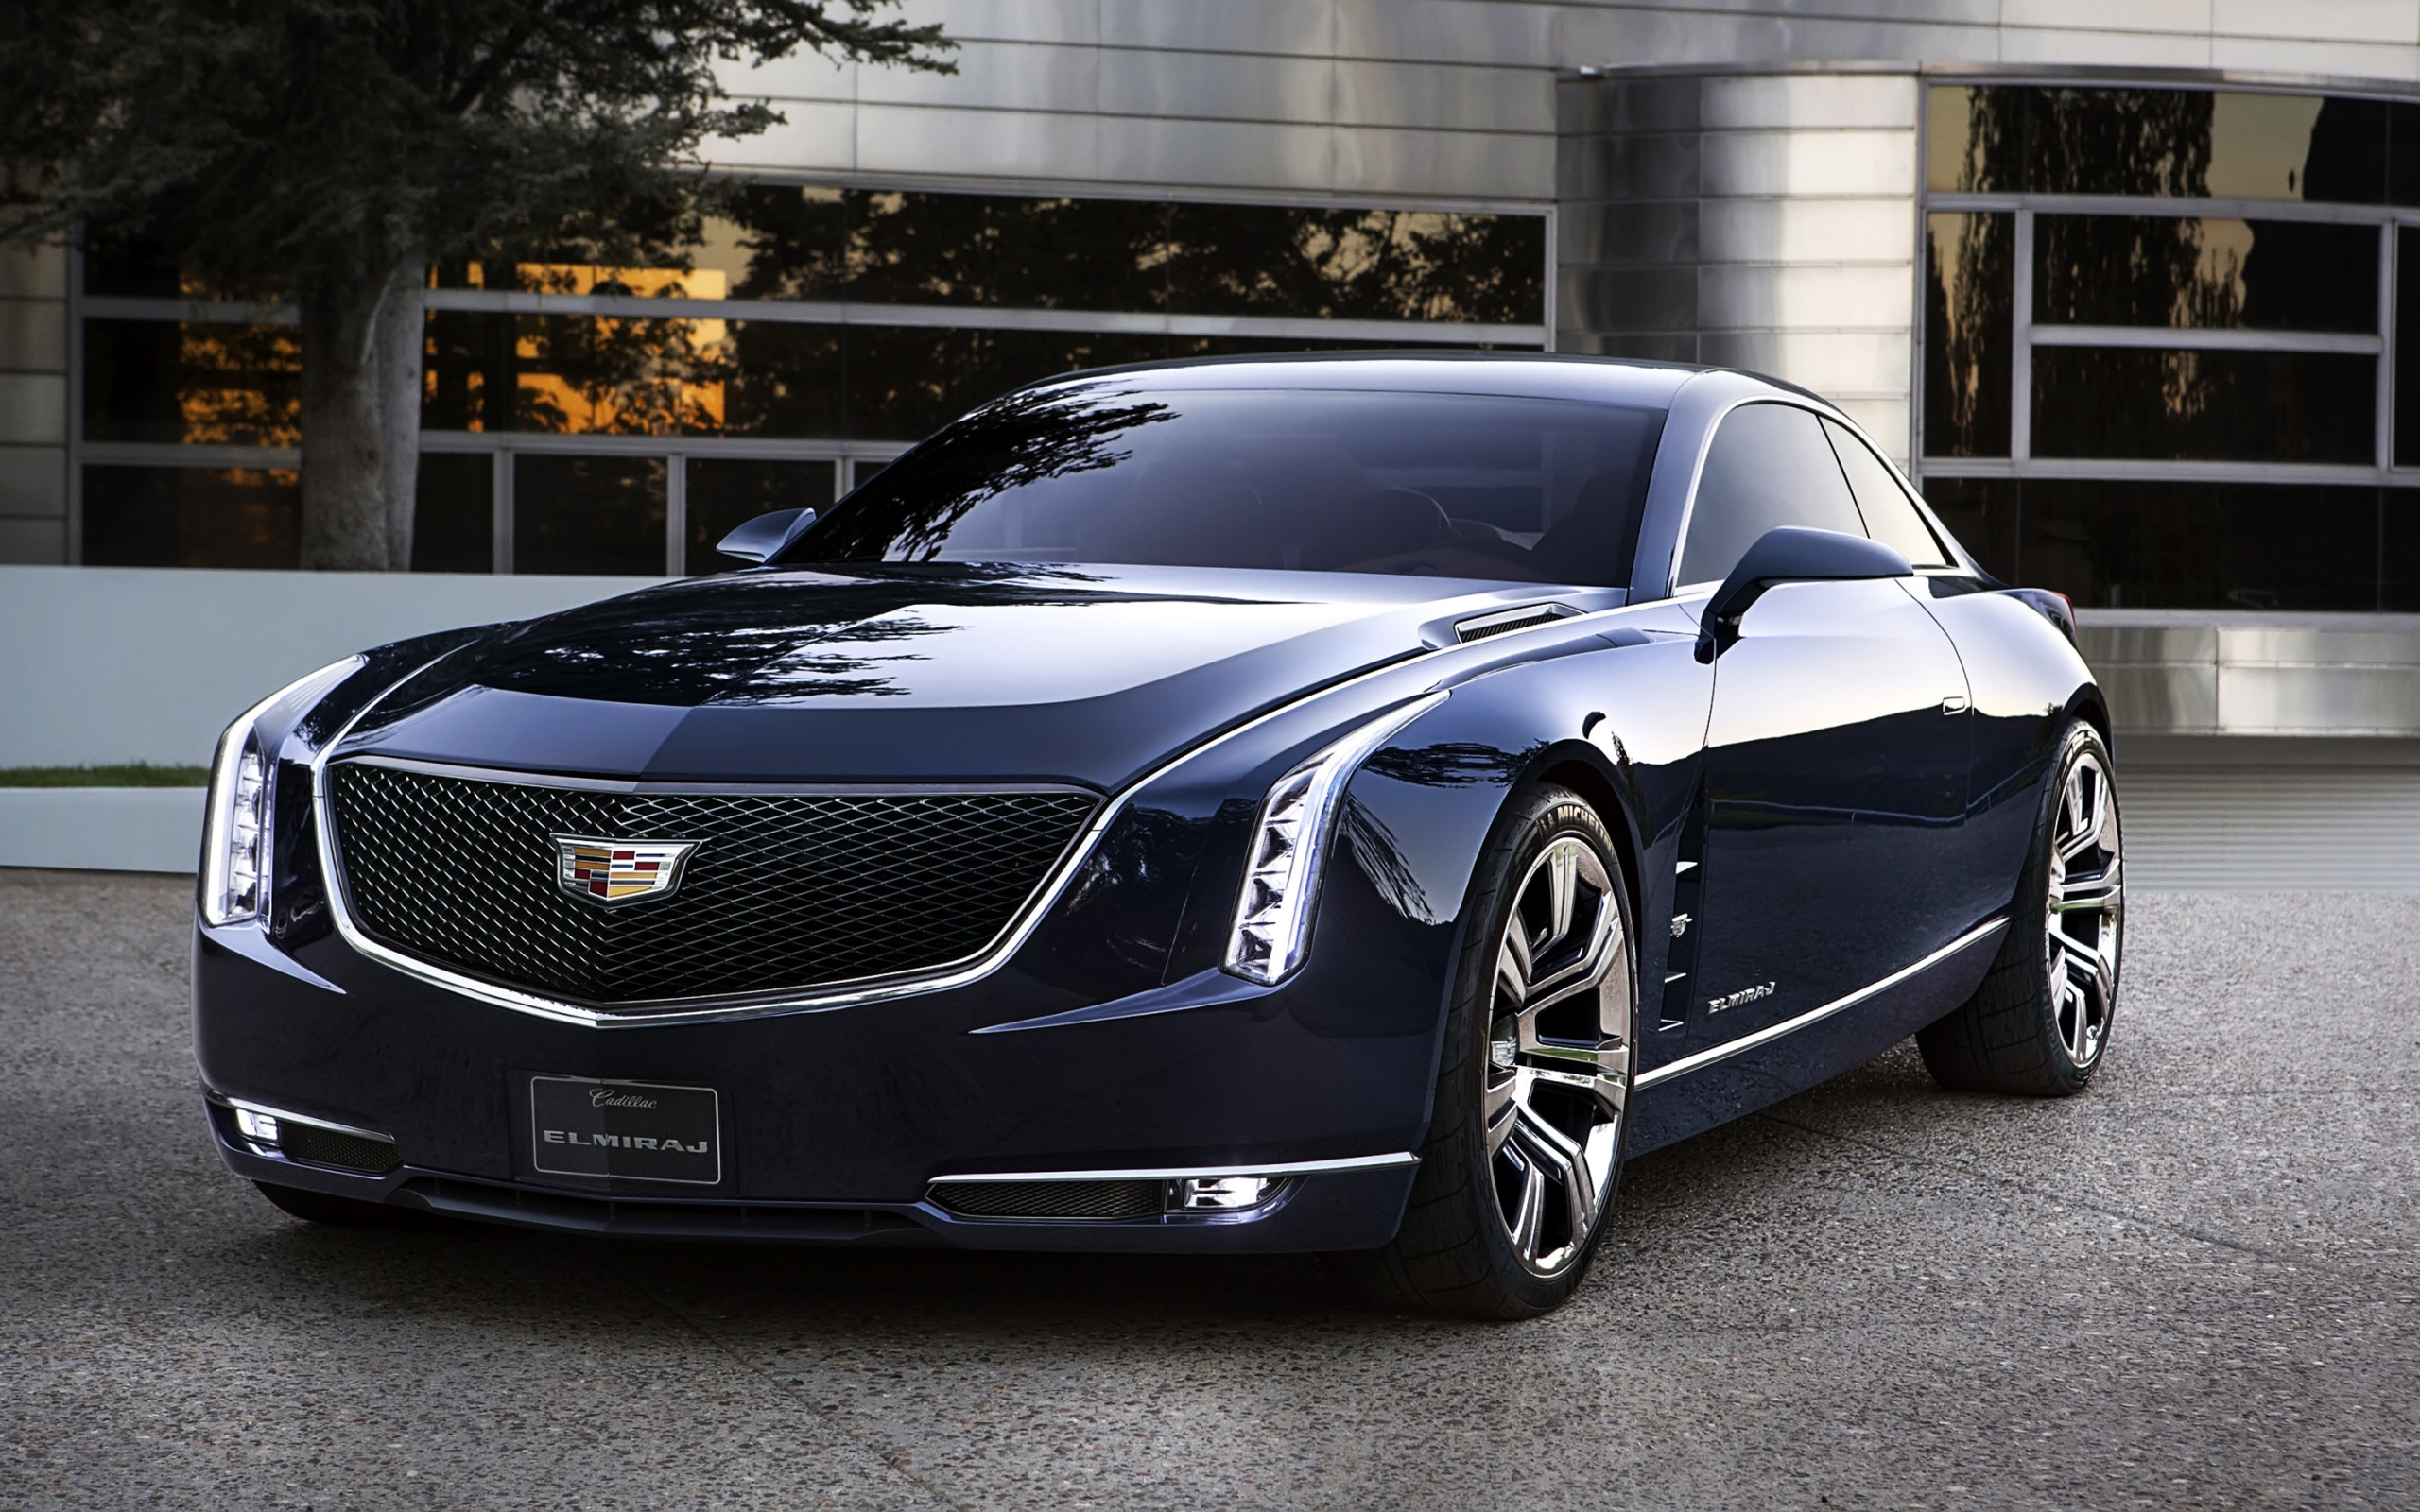 2013 Cadillac Elmiraj Concept for 2560 x 1600 widescreen resolution